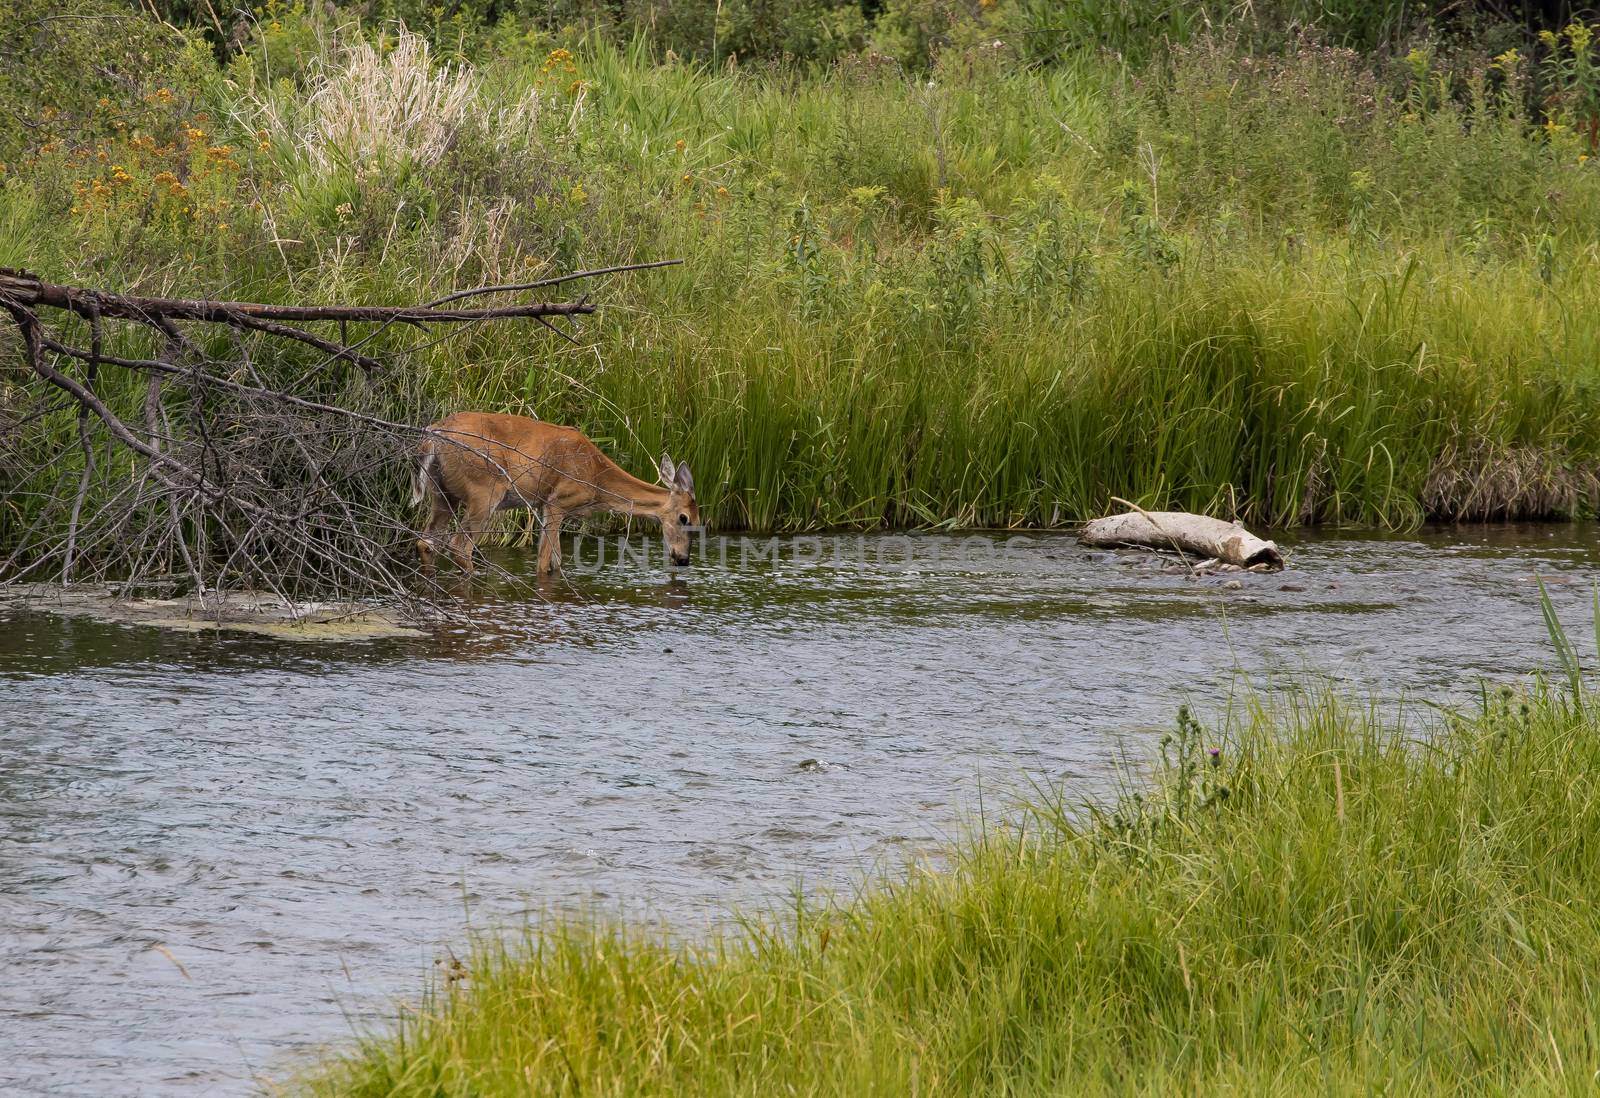 Deer in Stream, National Bison Range, Montana